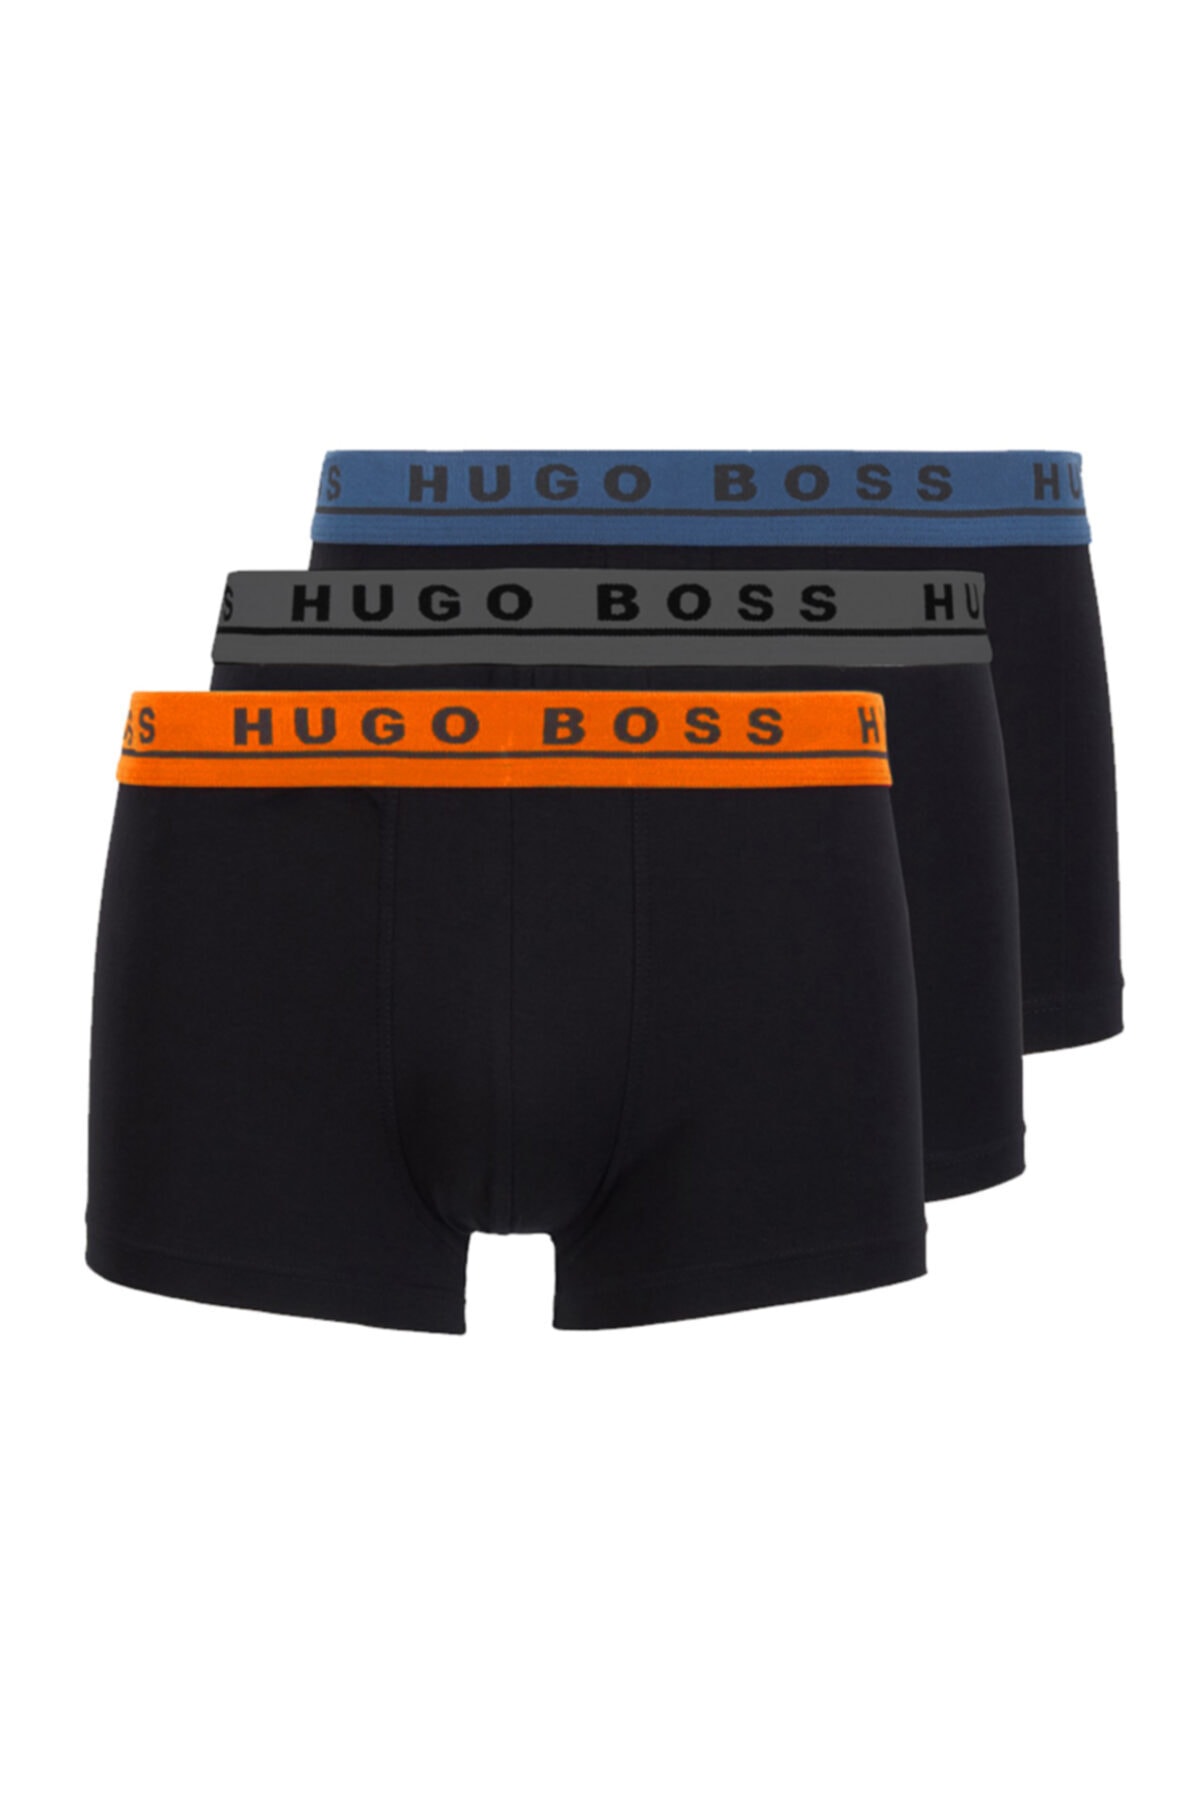 Hugo Boss Erkek 3lü Boxer 50325791 U005817